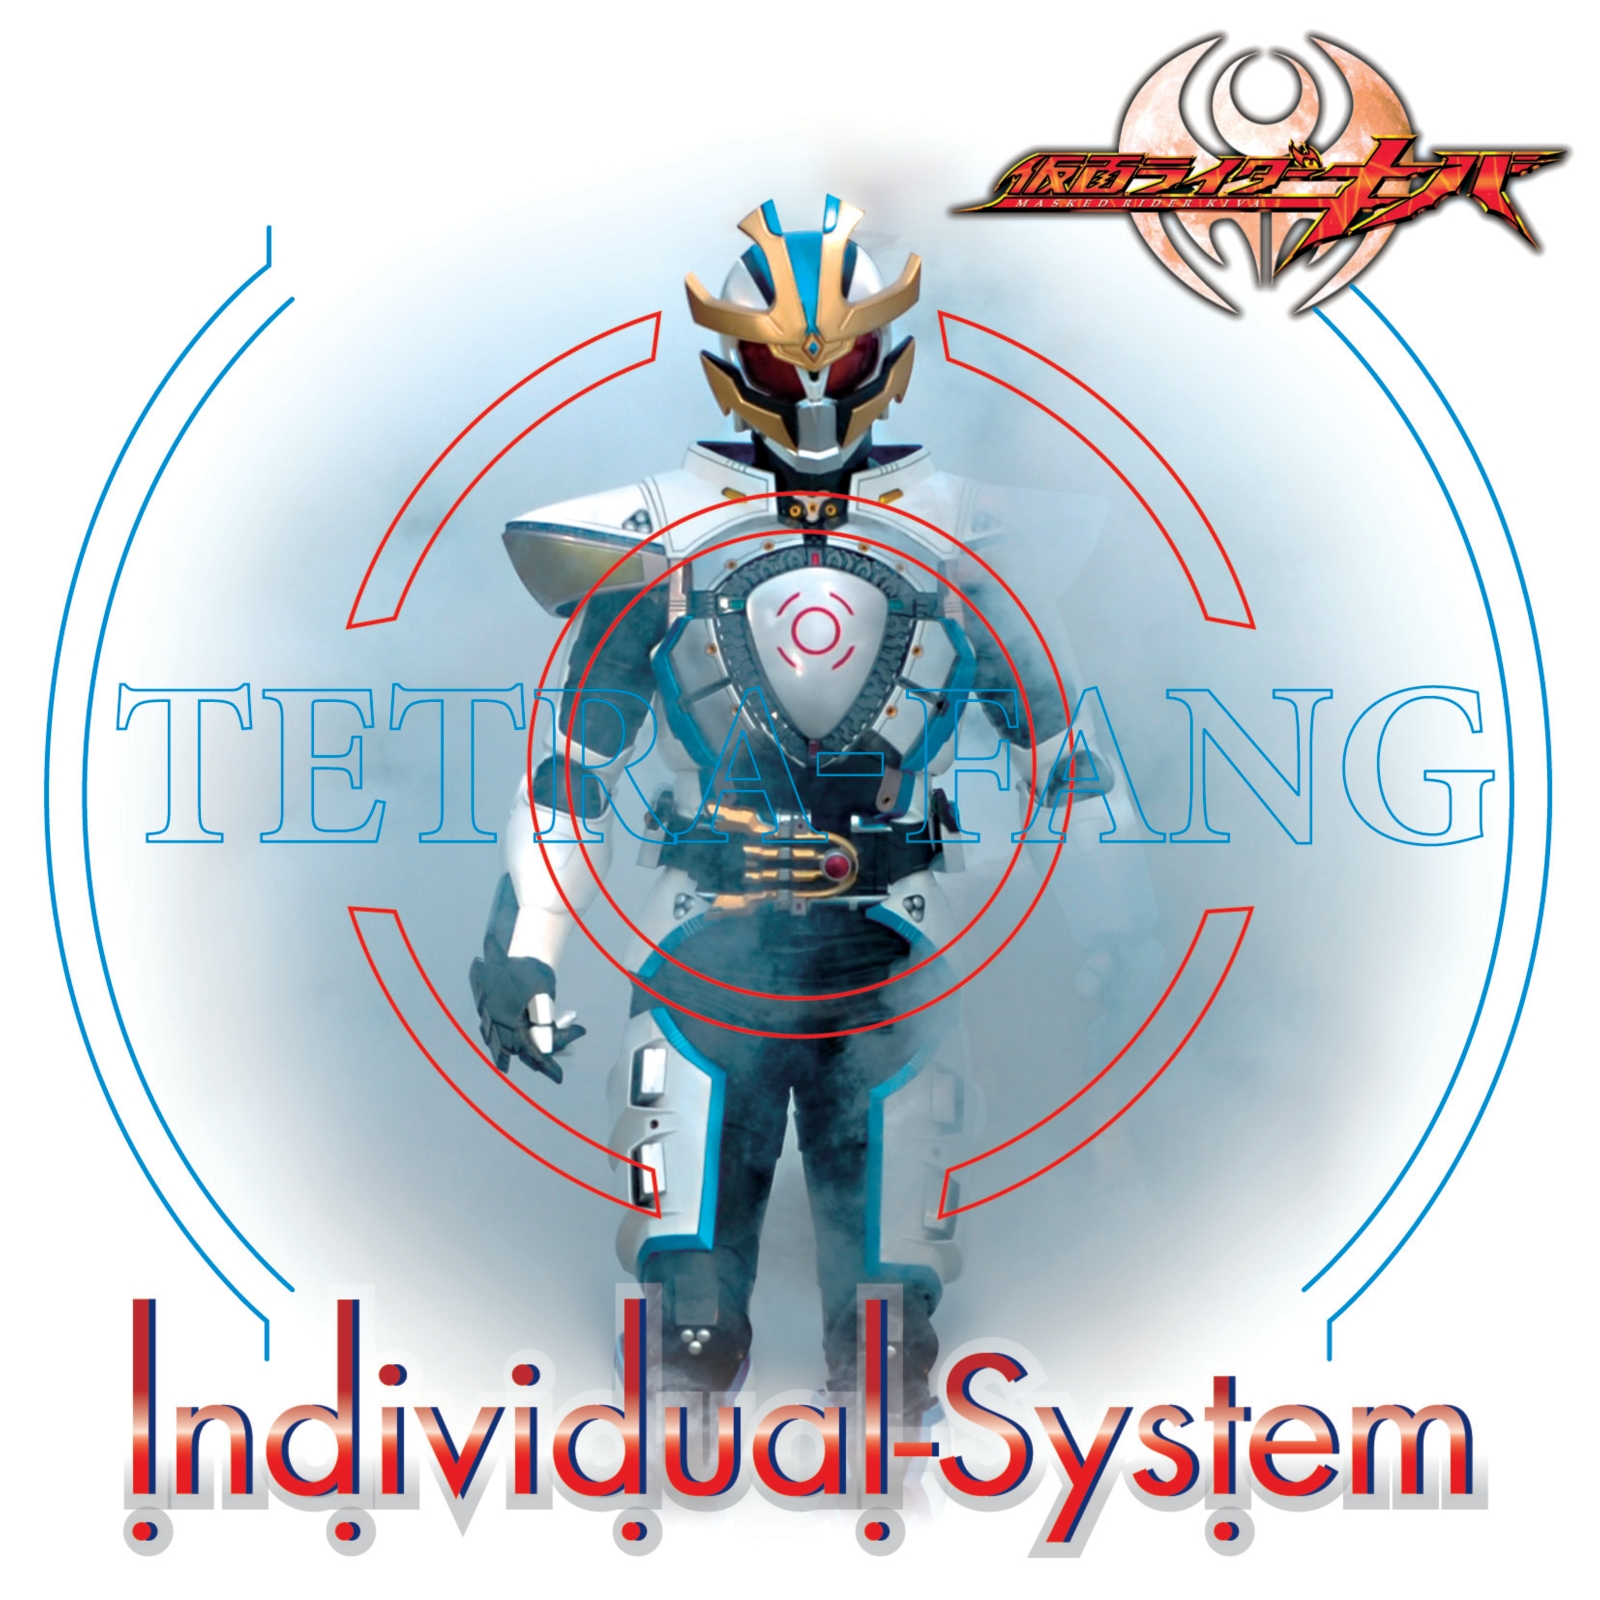 TETRA-FANG - Individual-System